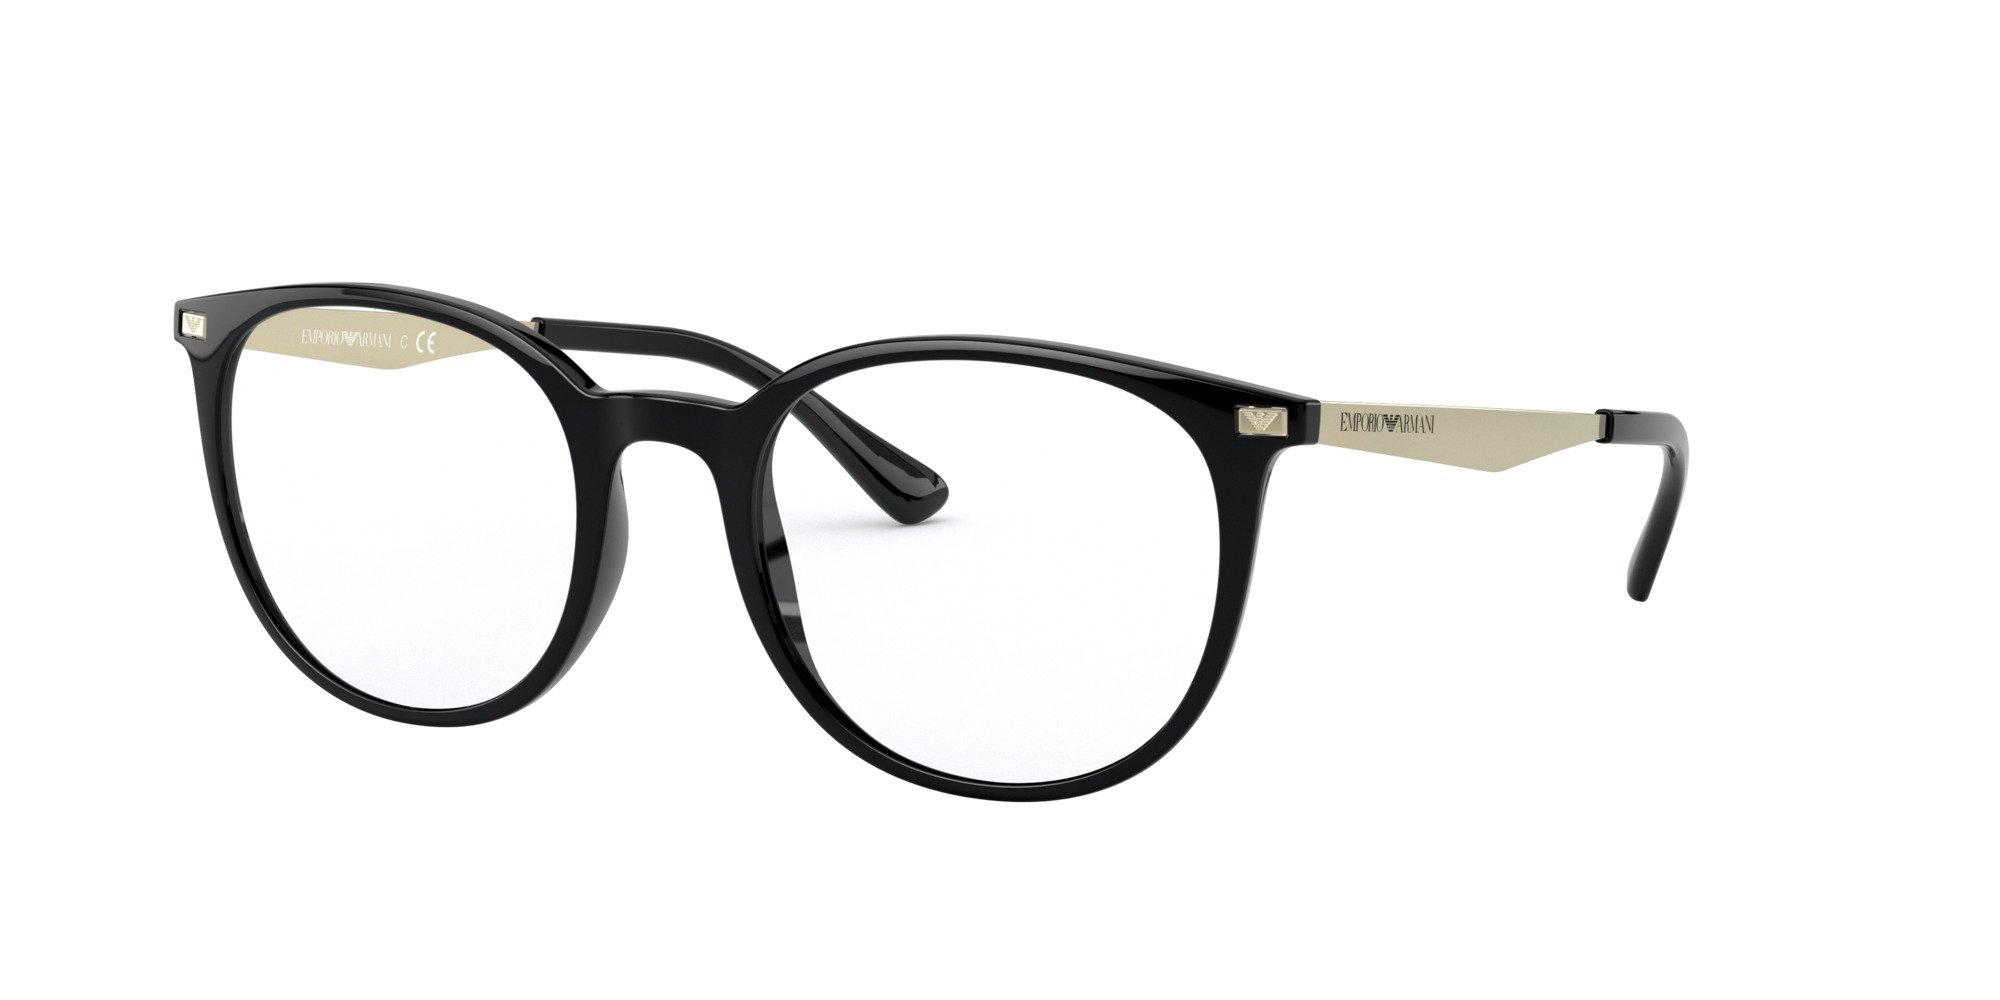 Das Bild zeigt die Korrektionsbrille EA3168 5001 von der Marke Emporio Armani in Schwarz.